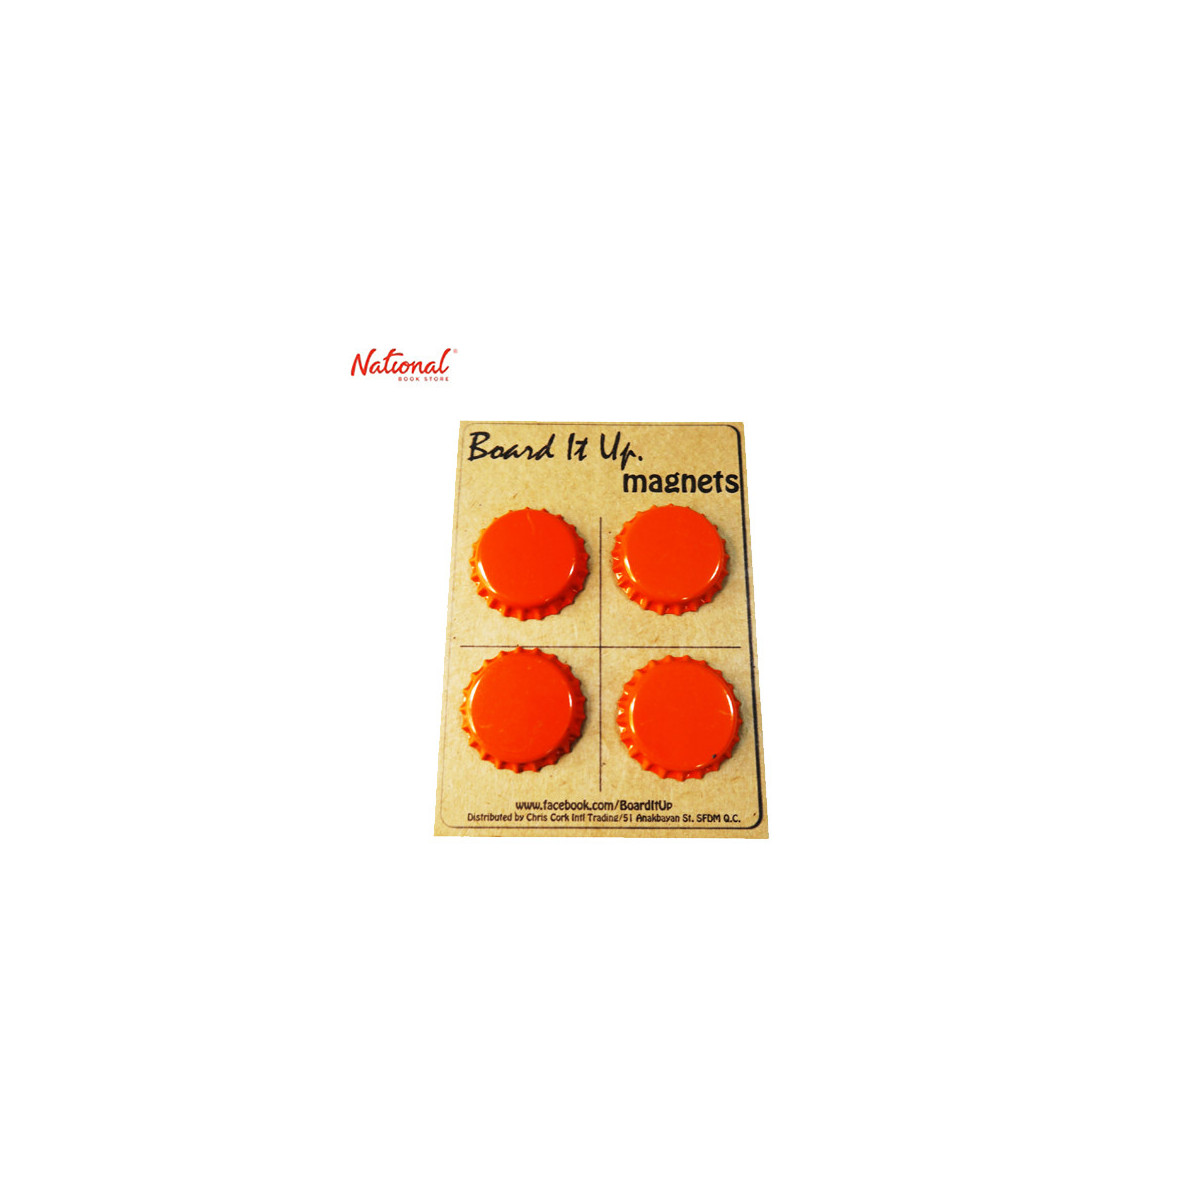 Magnet Button 4pieces per pack Bottle Plain, Orange